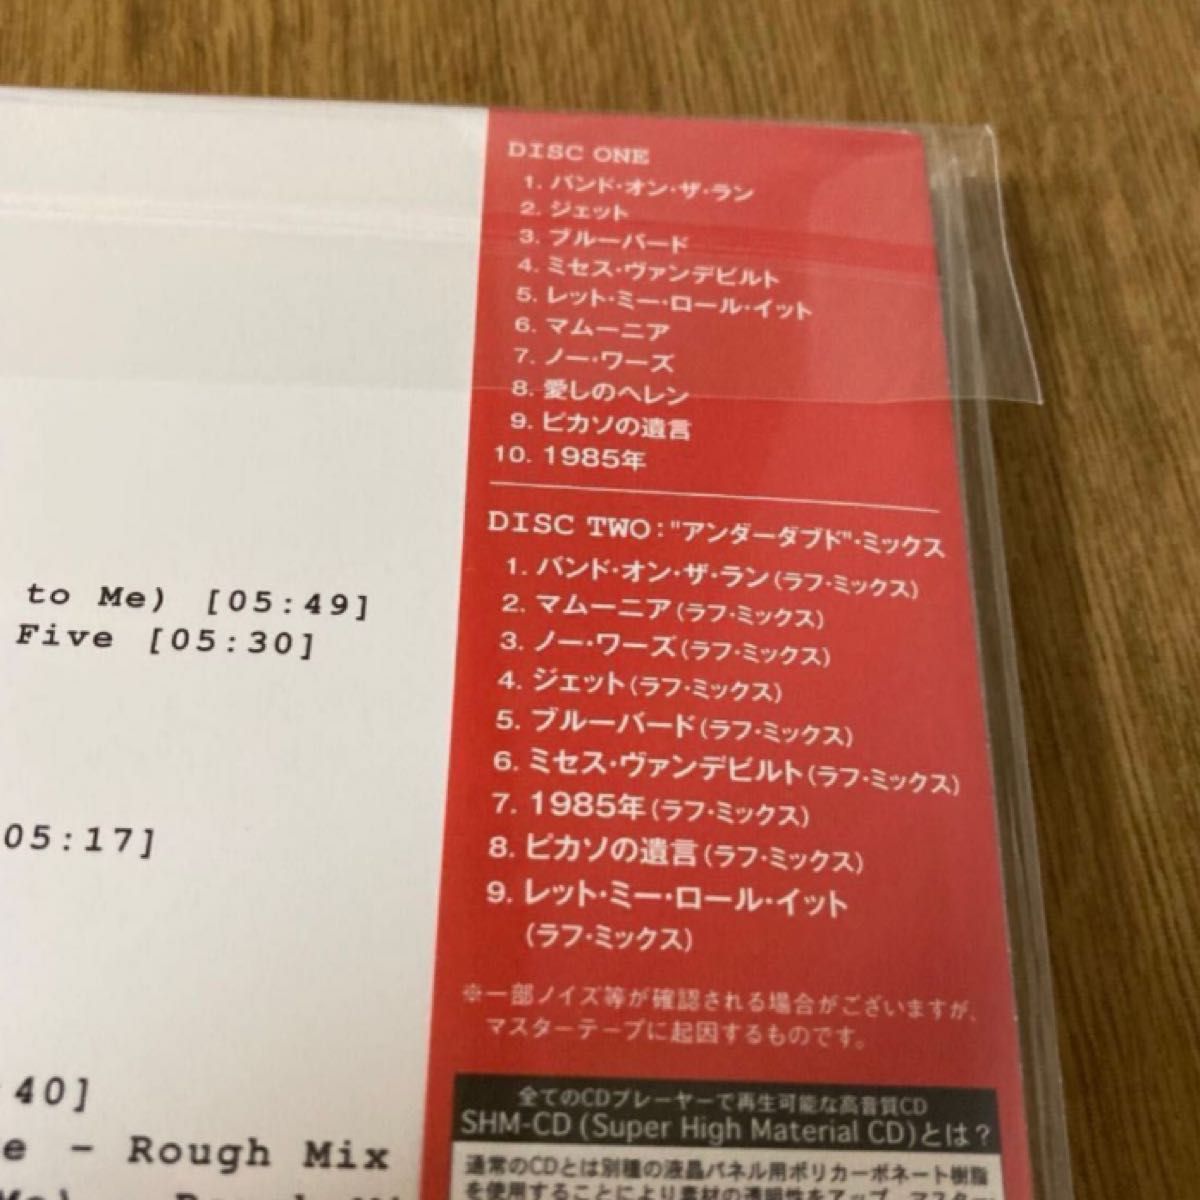 新品未開封★ポールマッカートニー&ウイングス 2SHM-CD 『バンドオンザラン』 50周年記念エディション 